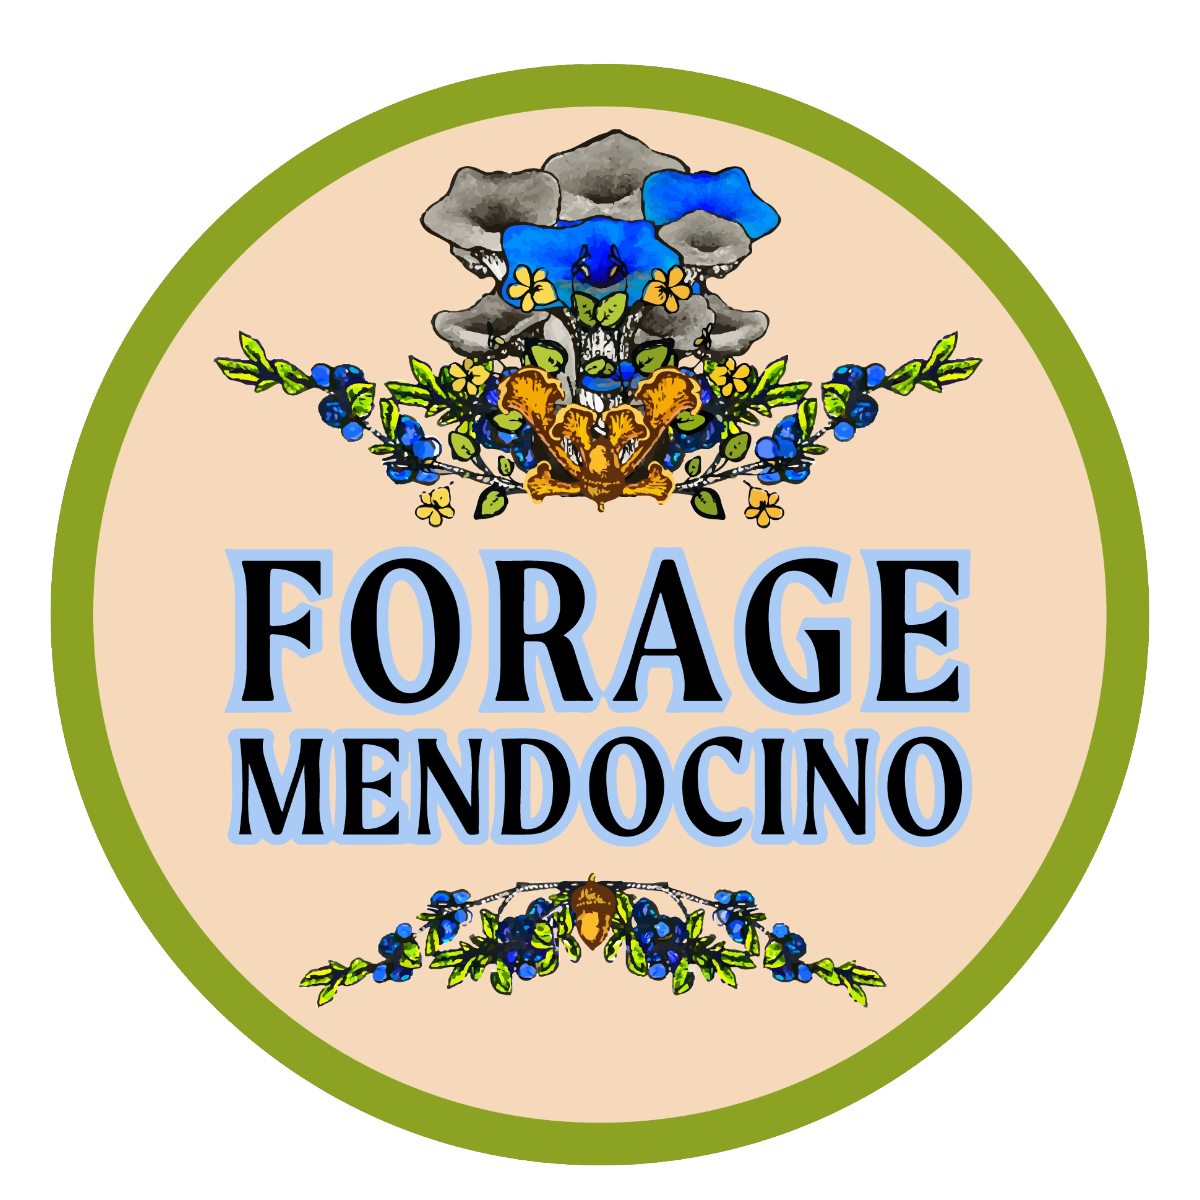 Forage Mendocino